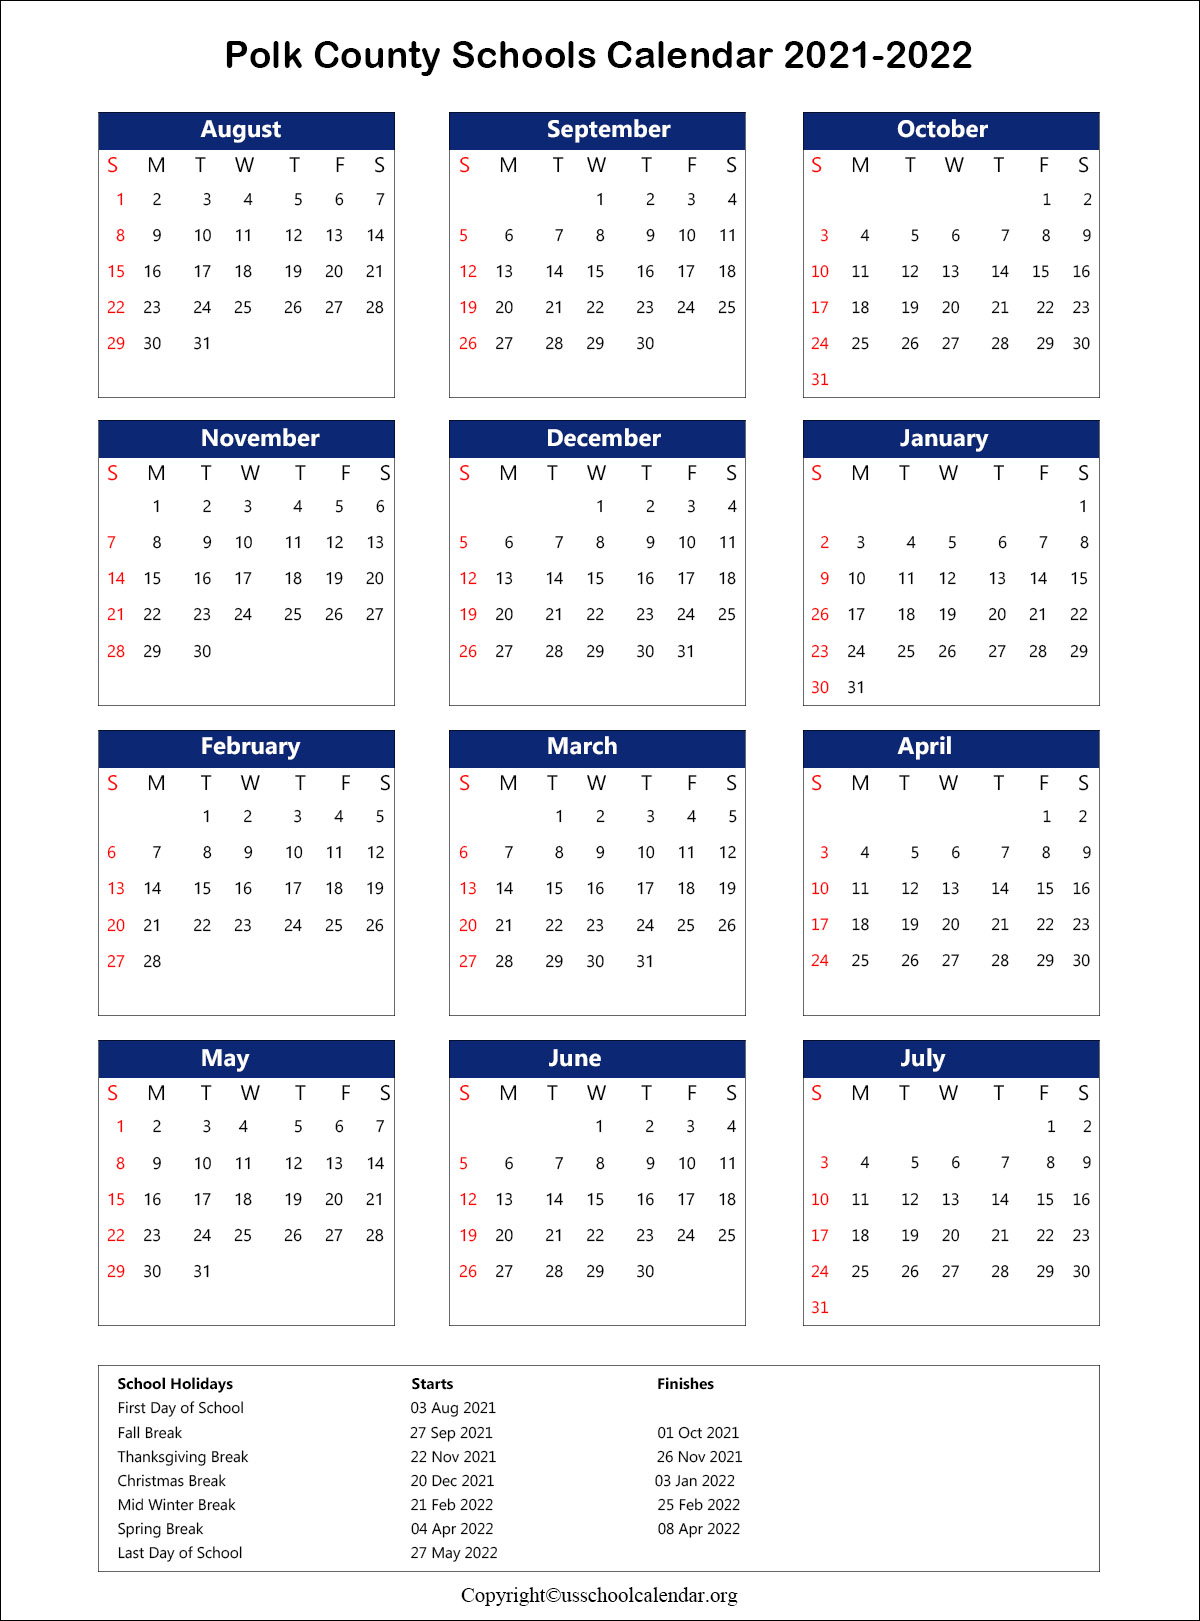 Polk County School Calendar with Holidays 2021 2022